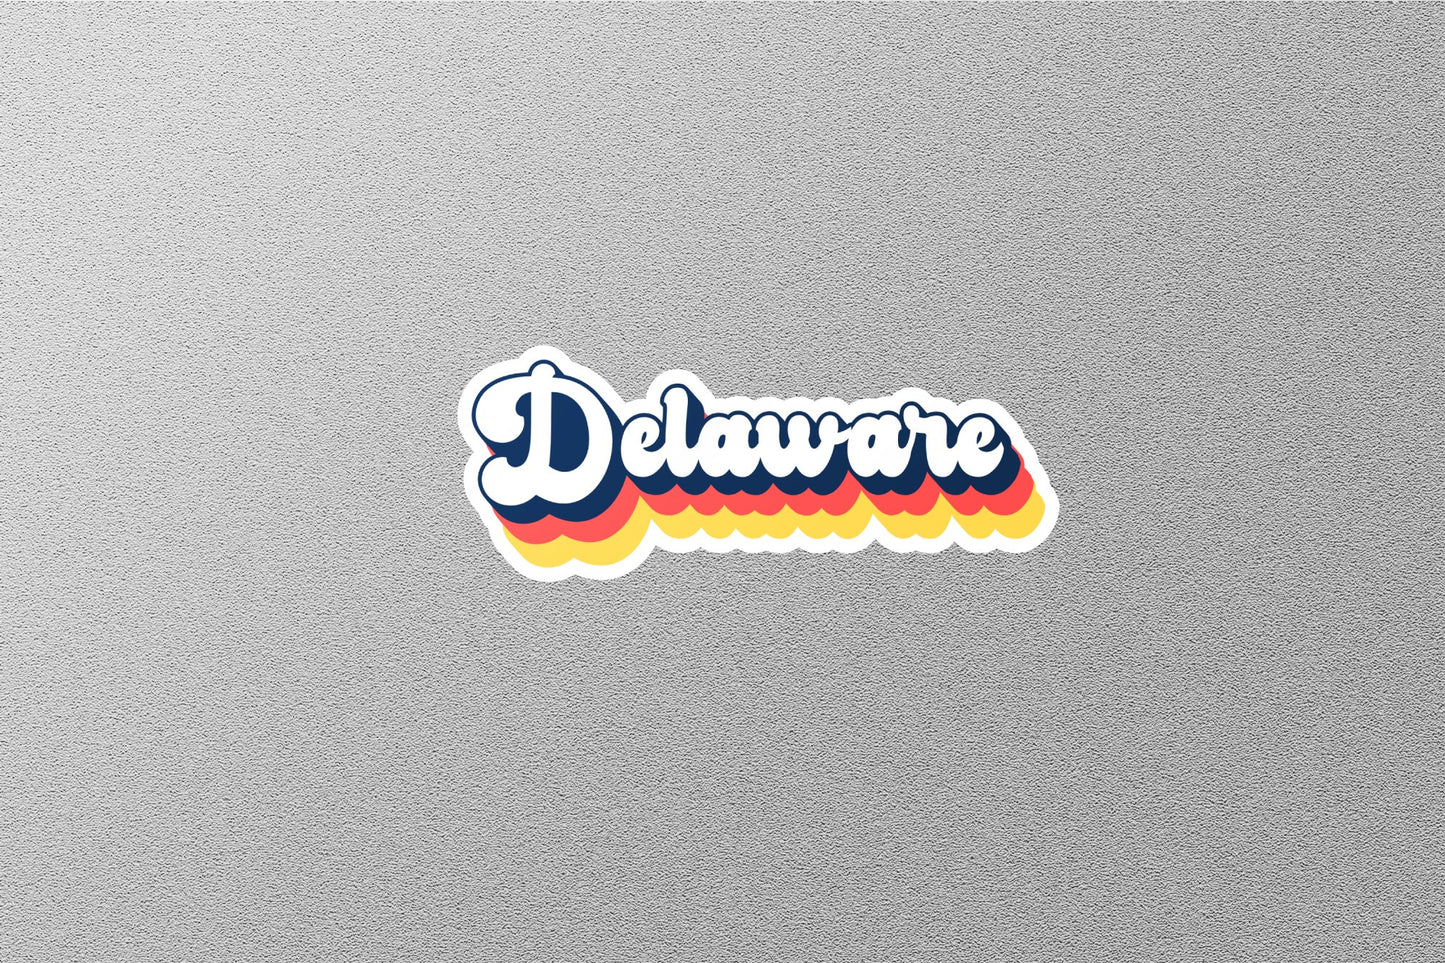 Retro Delaware State Sticker